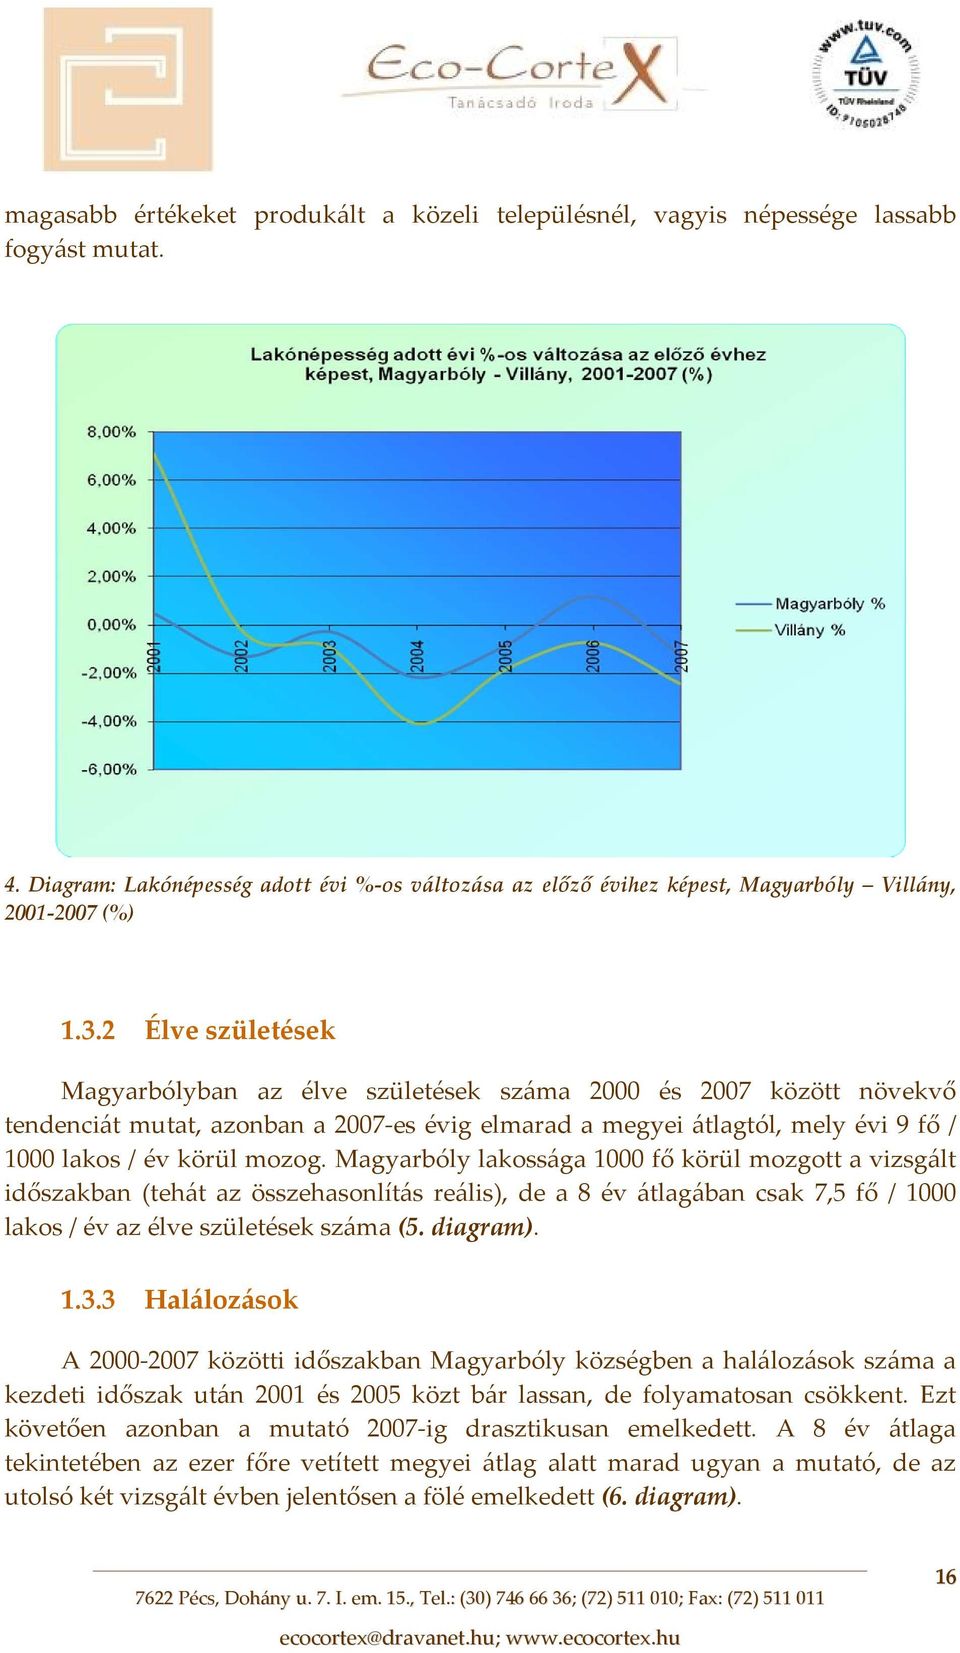 2 Élve születések Magyarbólyban az élve születések száma 2000 és 2007 között növekvő tendenciát mutat, azonban a 2007 es évig elmarad a megyei átlagtól, mely évi 9 fő / 1000 lakos / év körül mozog.